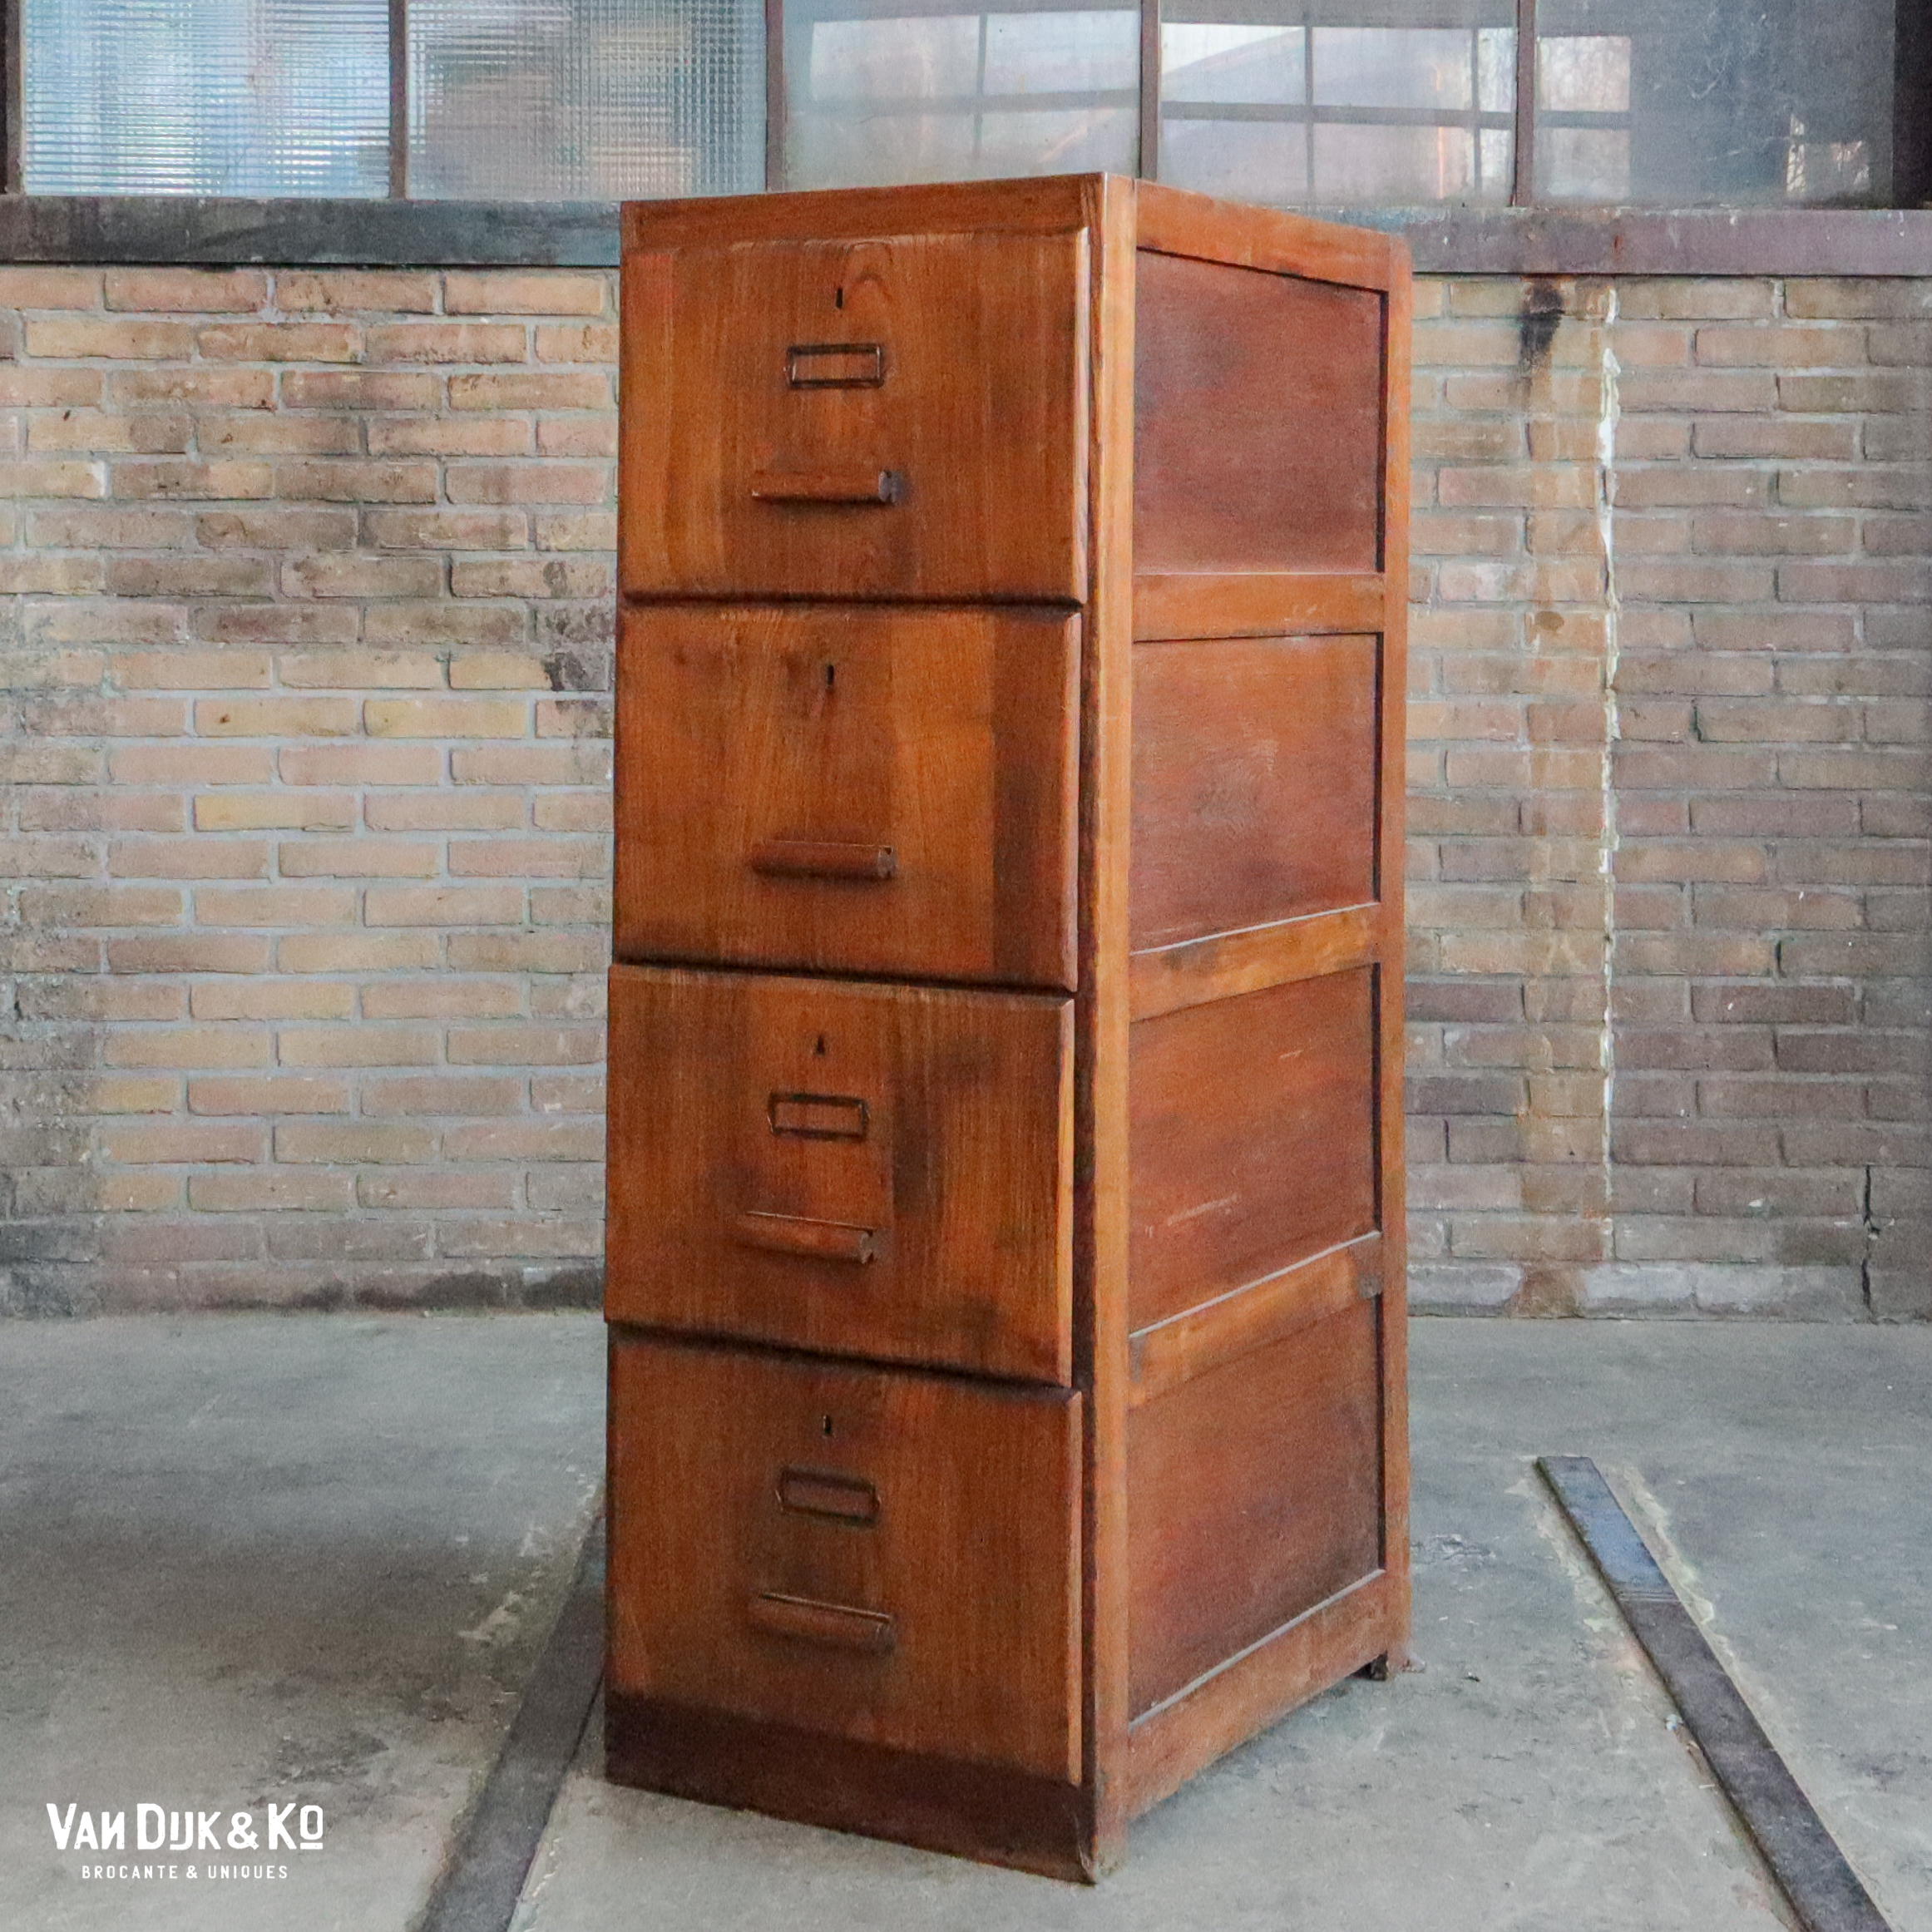 Wat is er mis herhaling Wonderbaarlijk Vintage houten archiefkast » Van Dijk & Ko